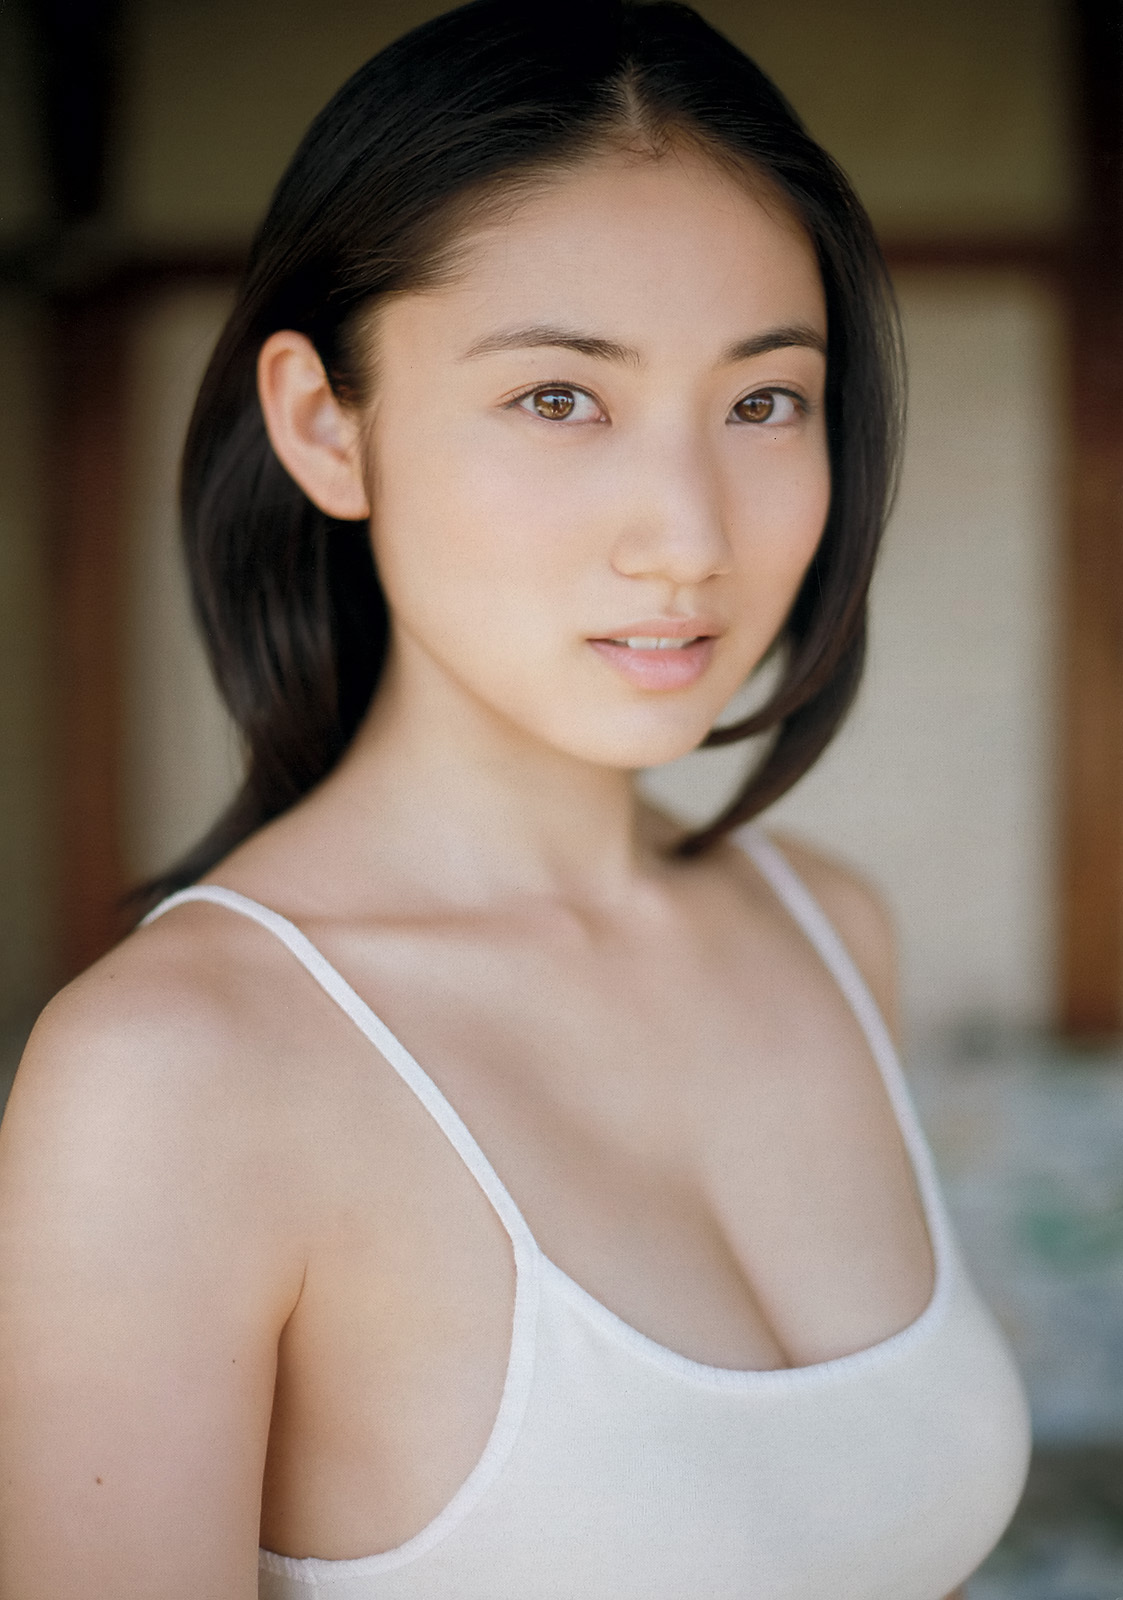 [weekly Playboy] No.26 Shiraki Okamoto, mitsuka Nakamura